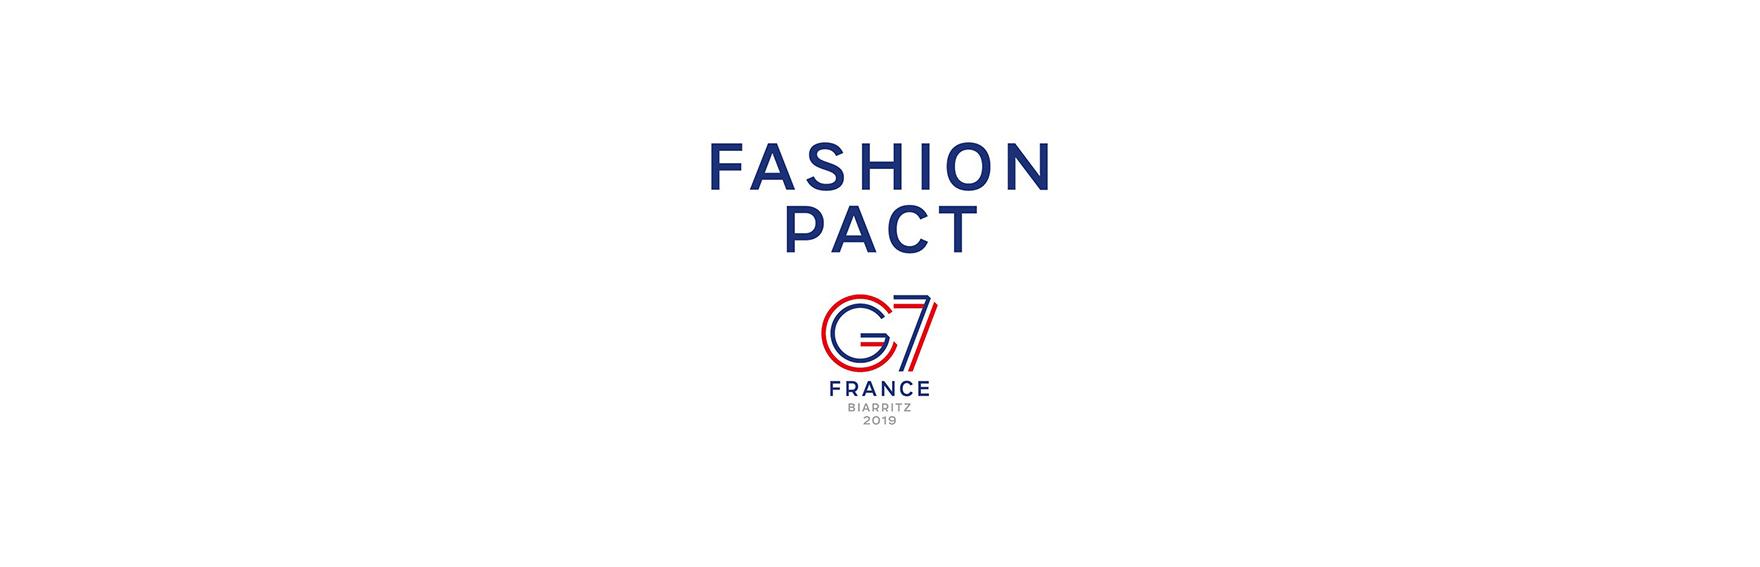 1760x567_G7_Fashion-Pact_V2.jpg